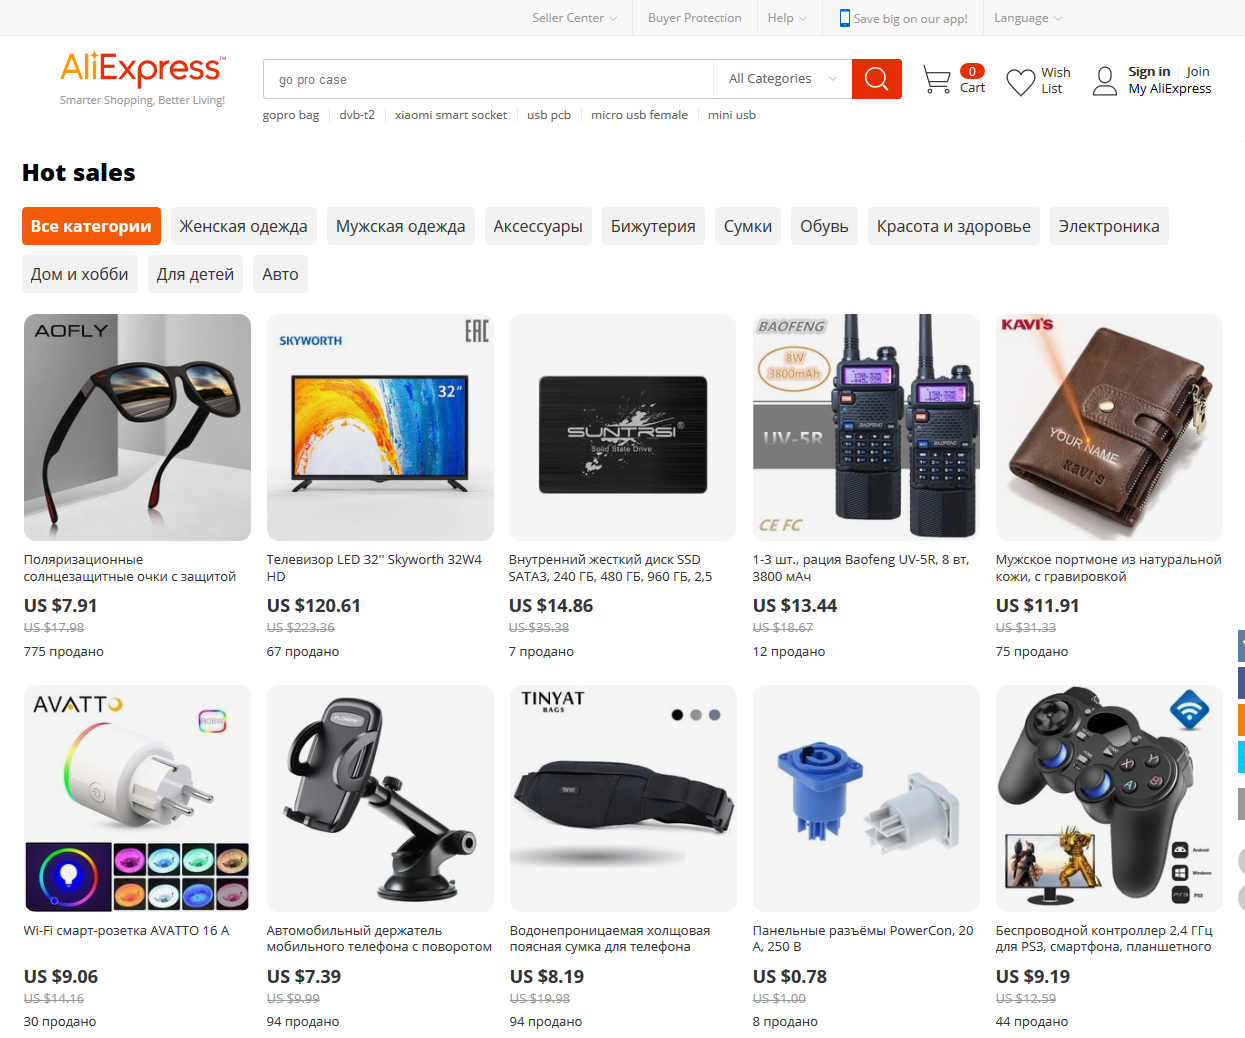 AliExpress.com Hot Sales Button